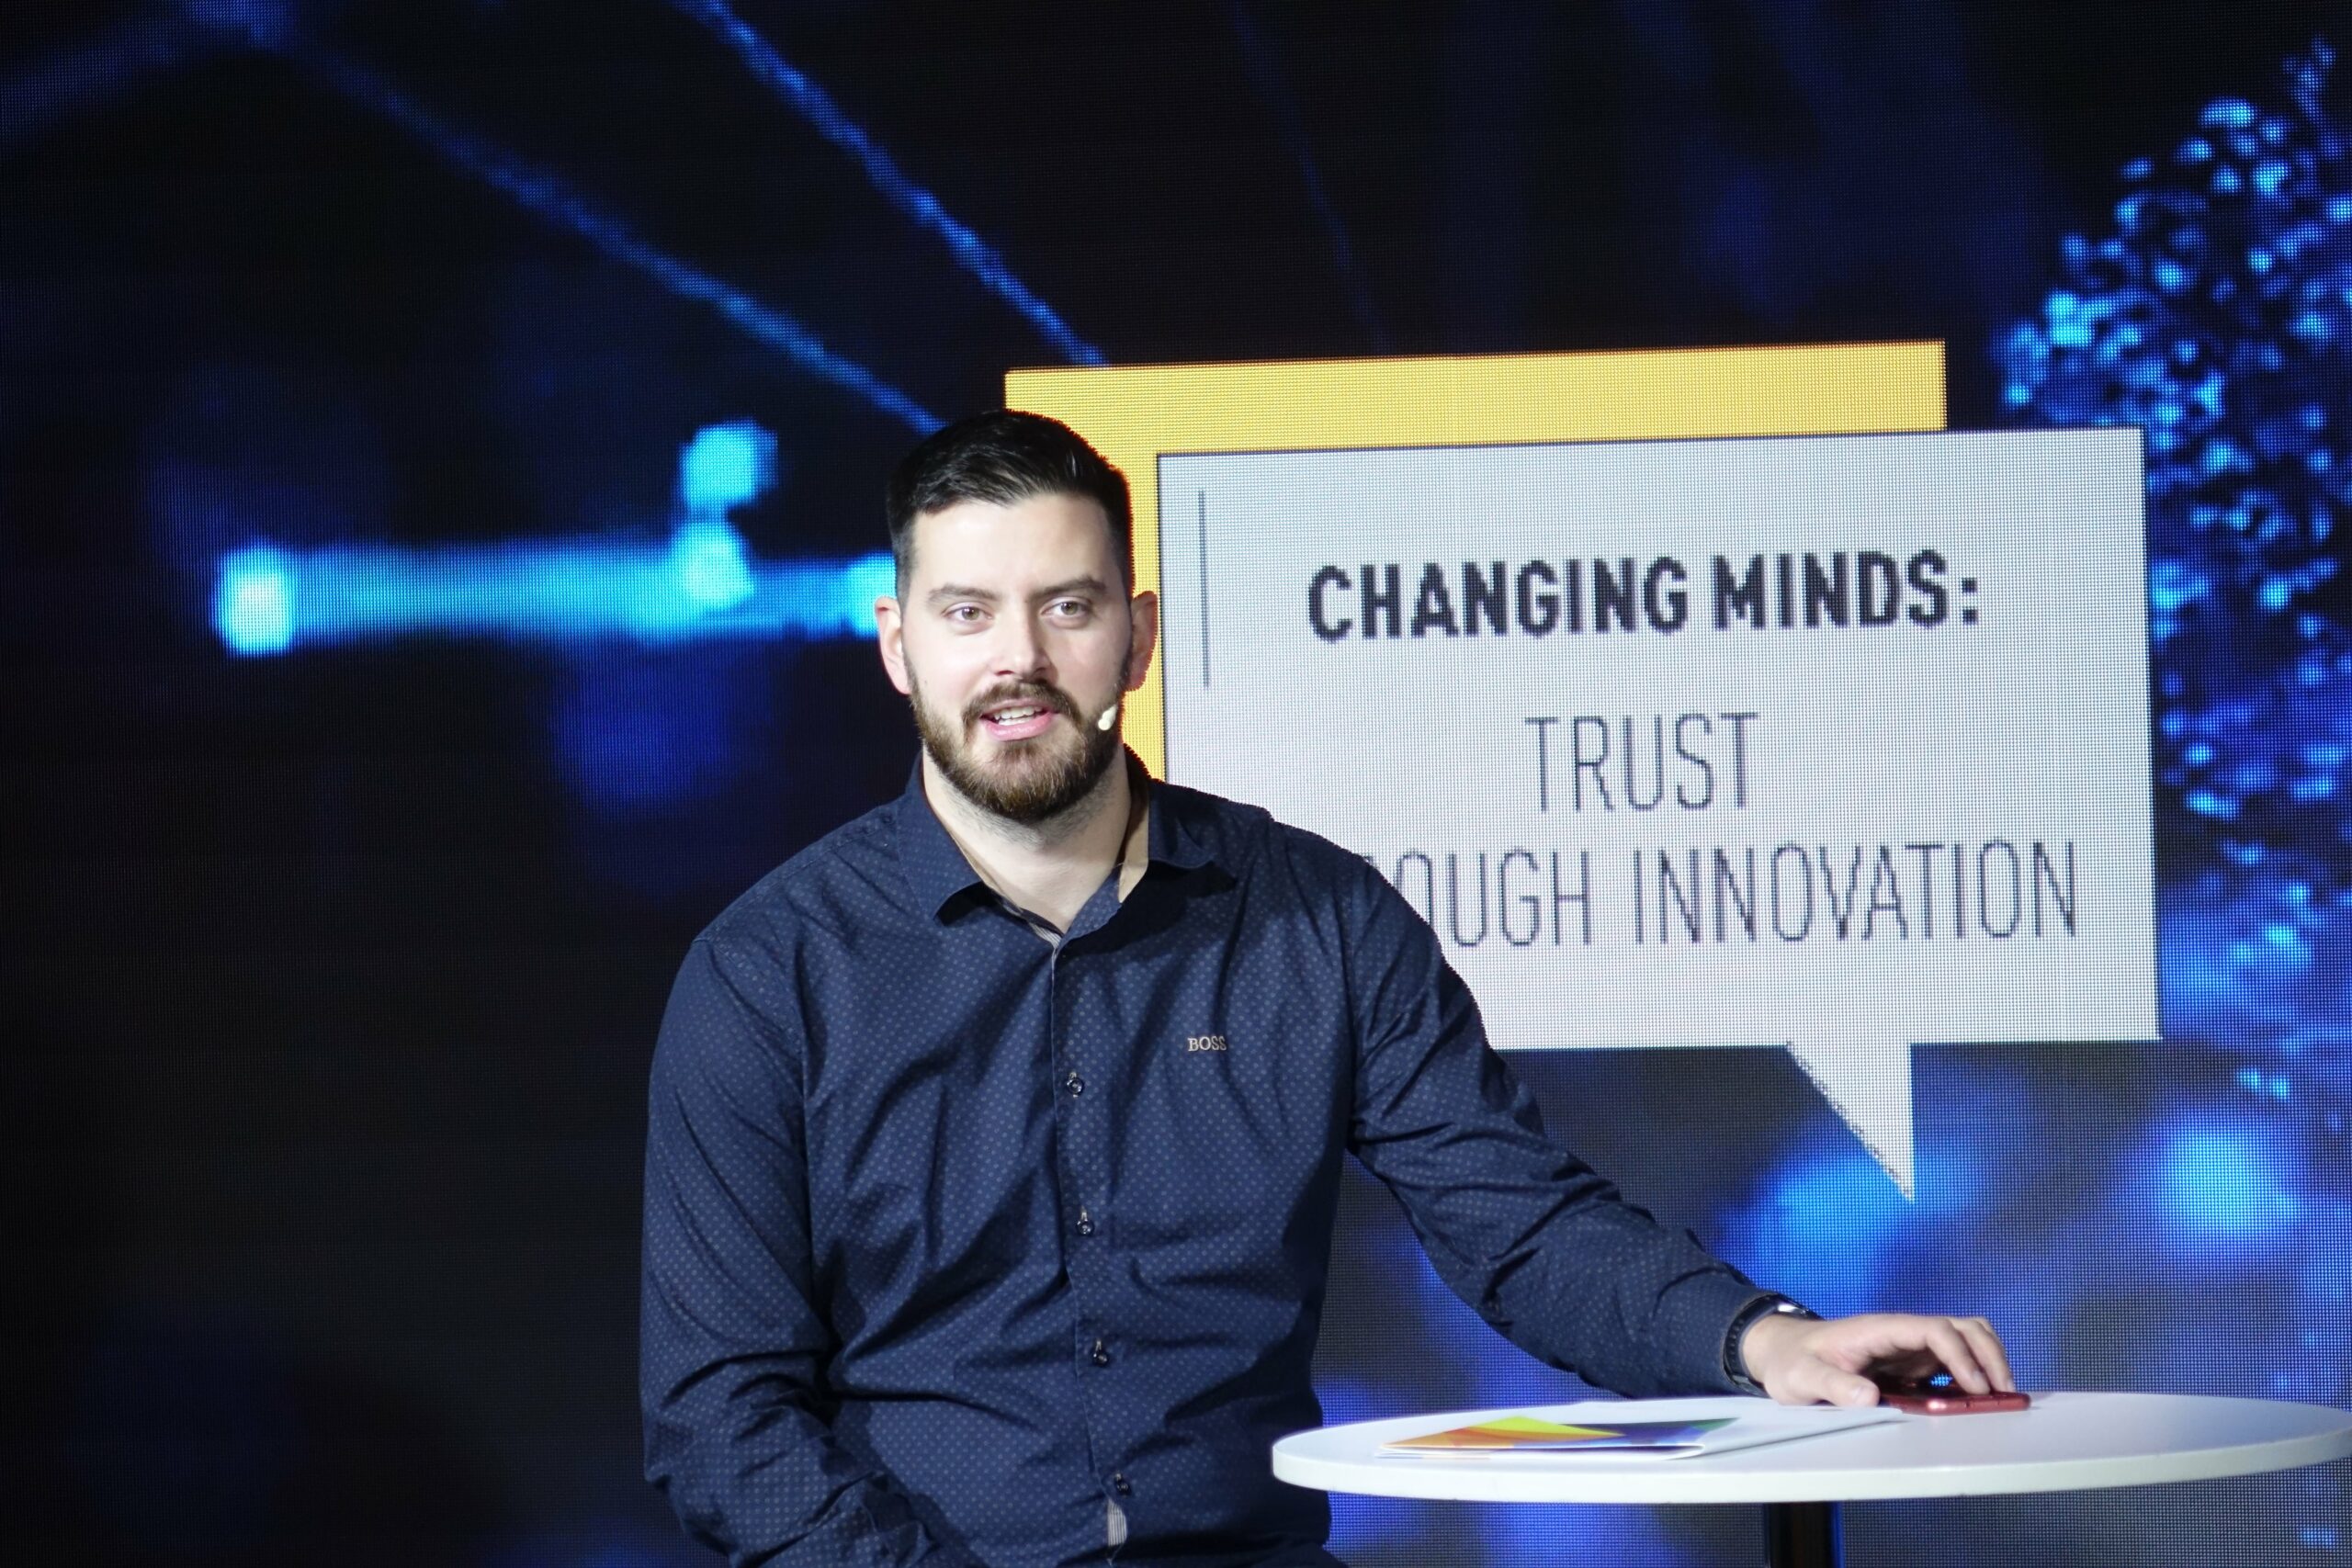 Srbija-Kosovo: četiri godine uspostavljanja poverenja i promene svesti kroz inovacije